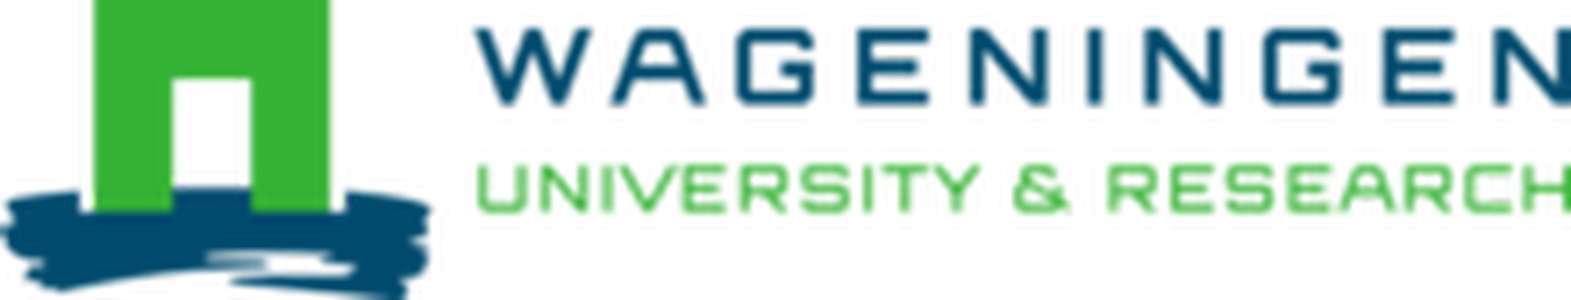 荷兰-瓦赫宁根大学和研究中心-logo